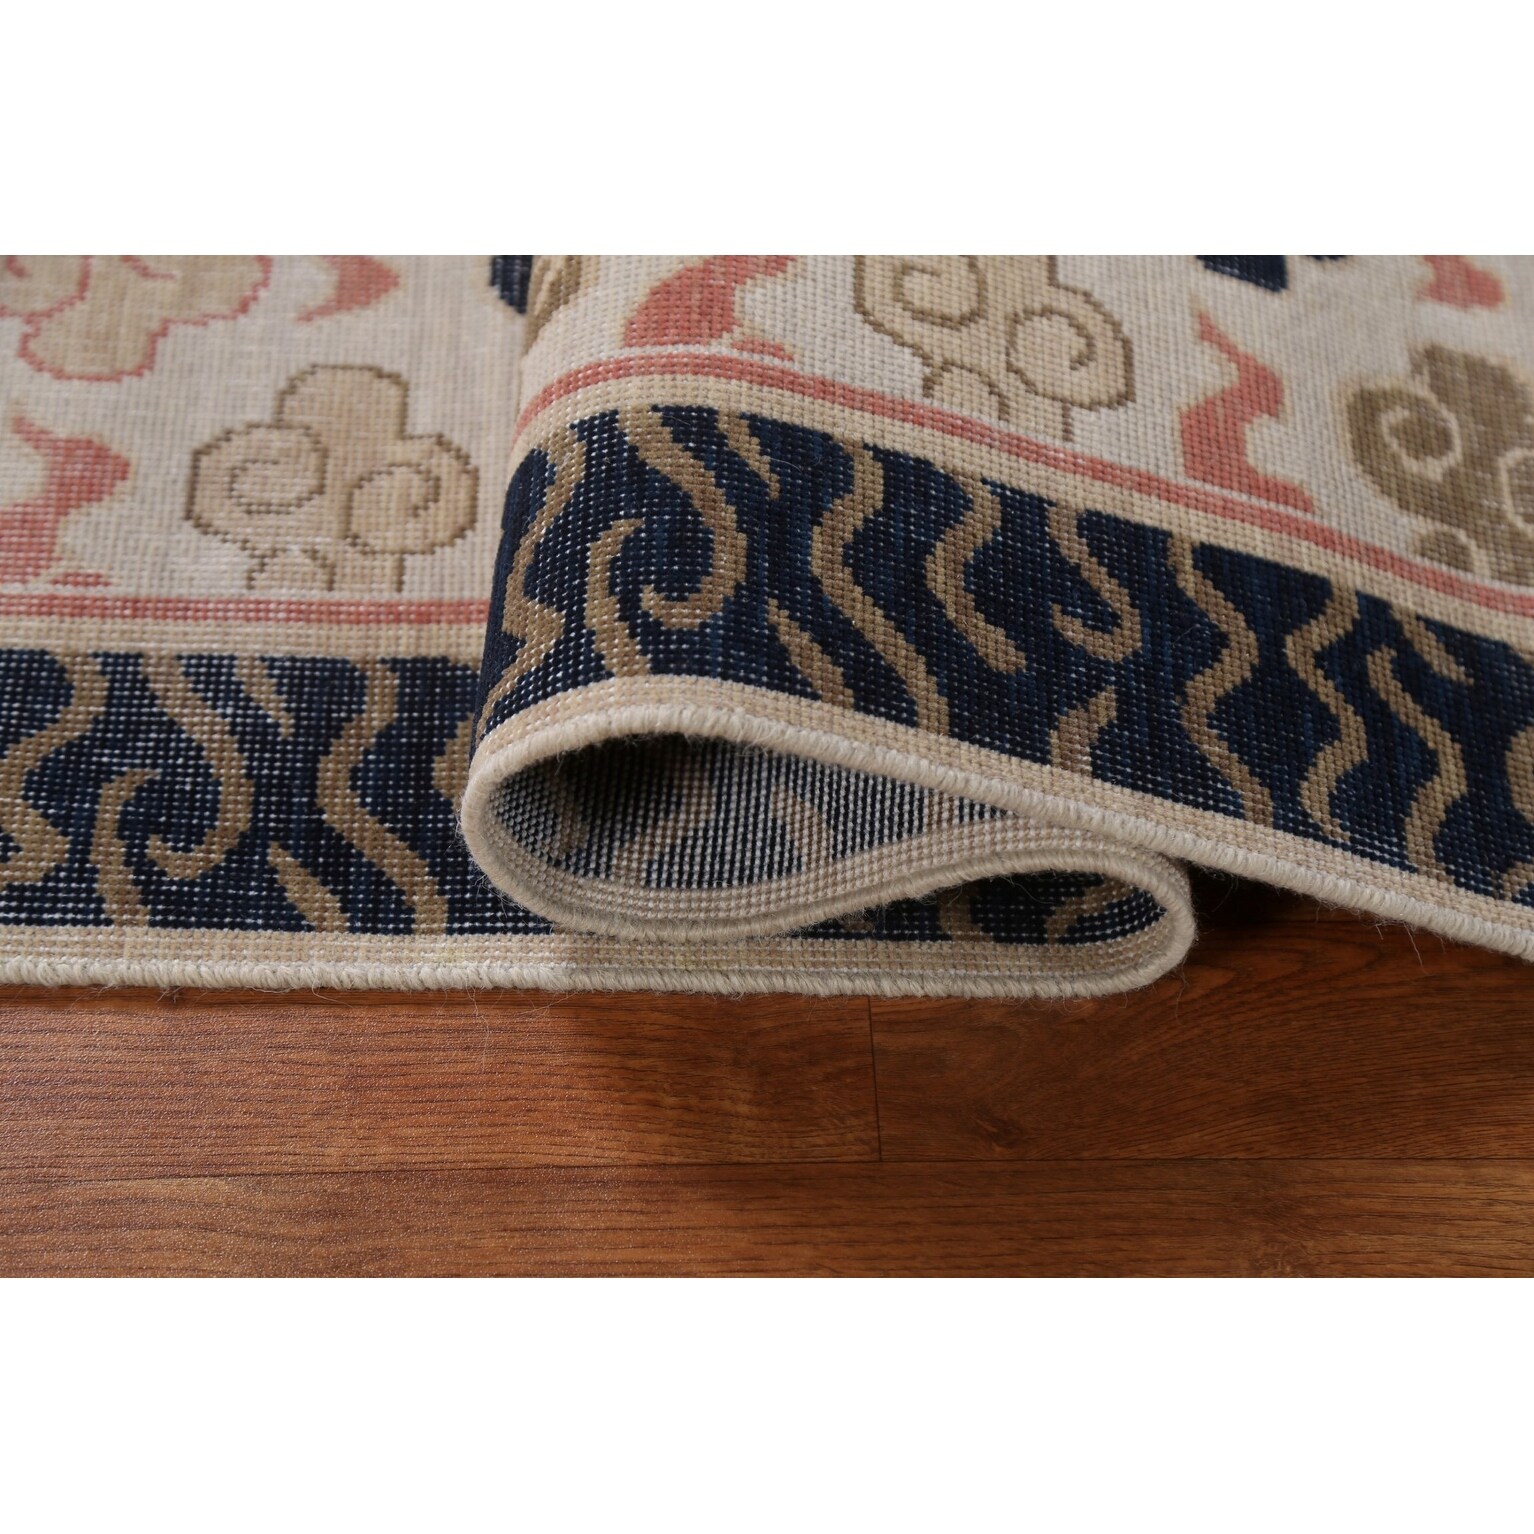 Wool Art Deco Turkish Oriental Runner Rug Hand-knotted Hallway Carpet -  2'4 x 5'10 - Bed Bath & Beyond - 35253797